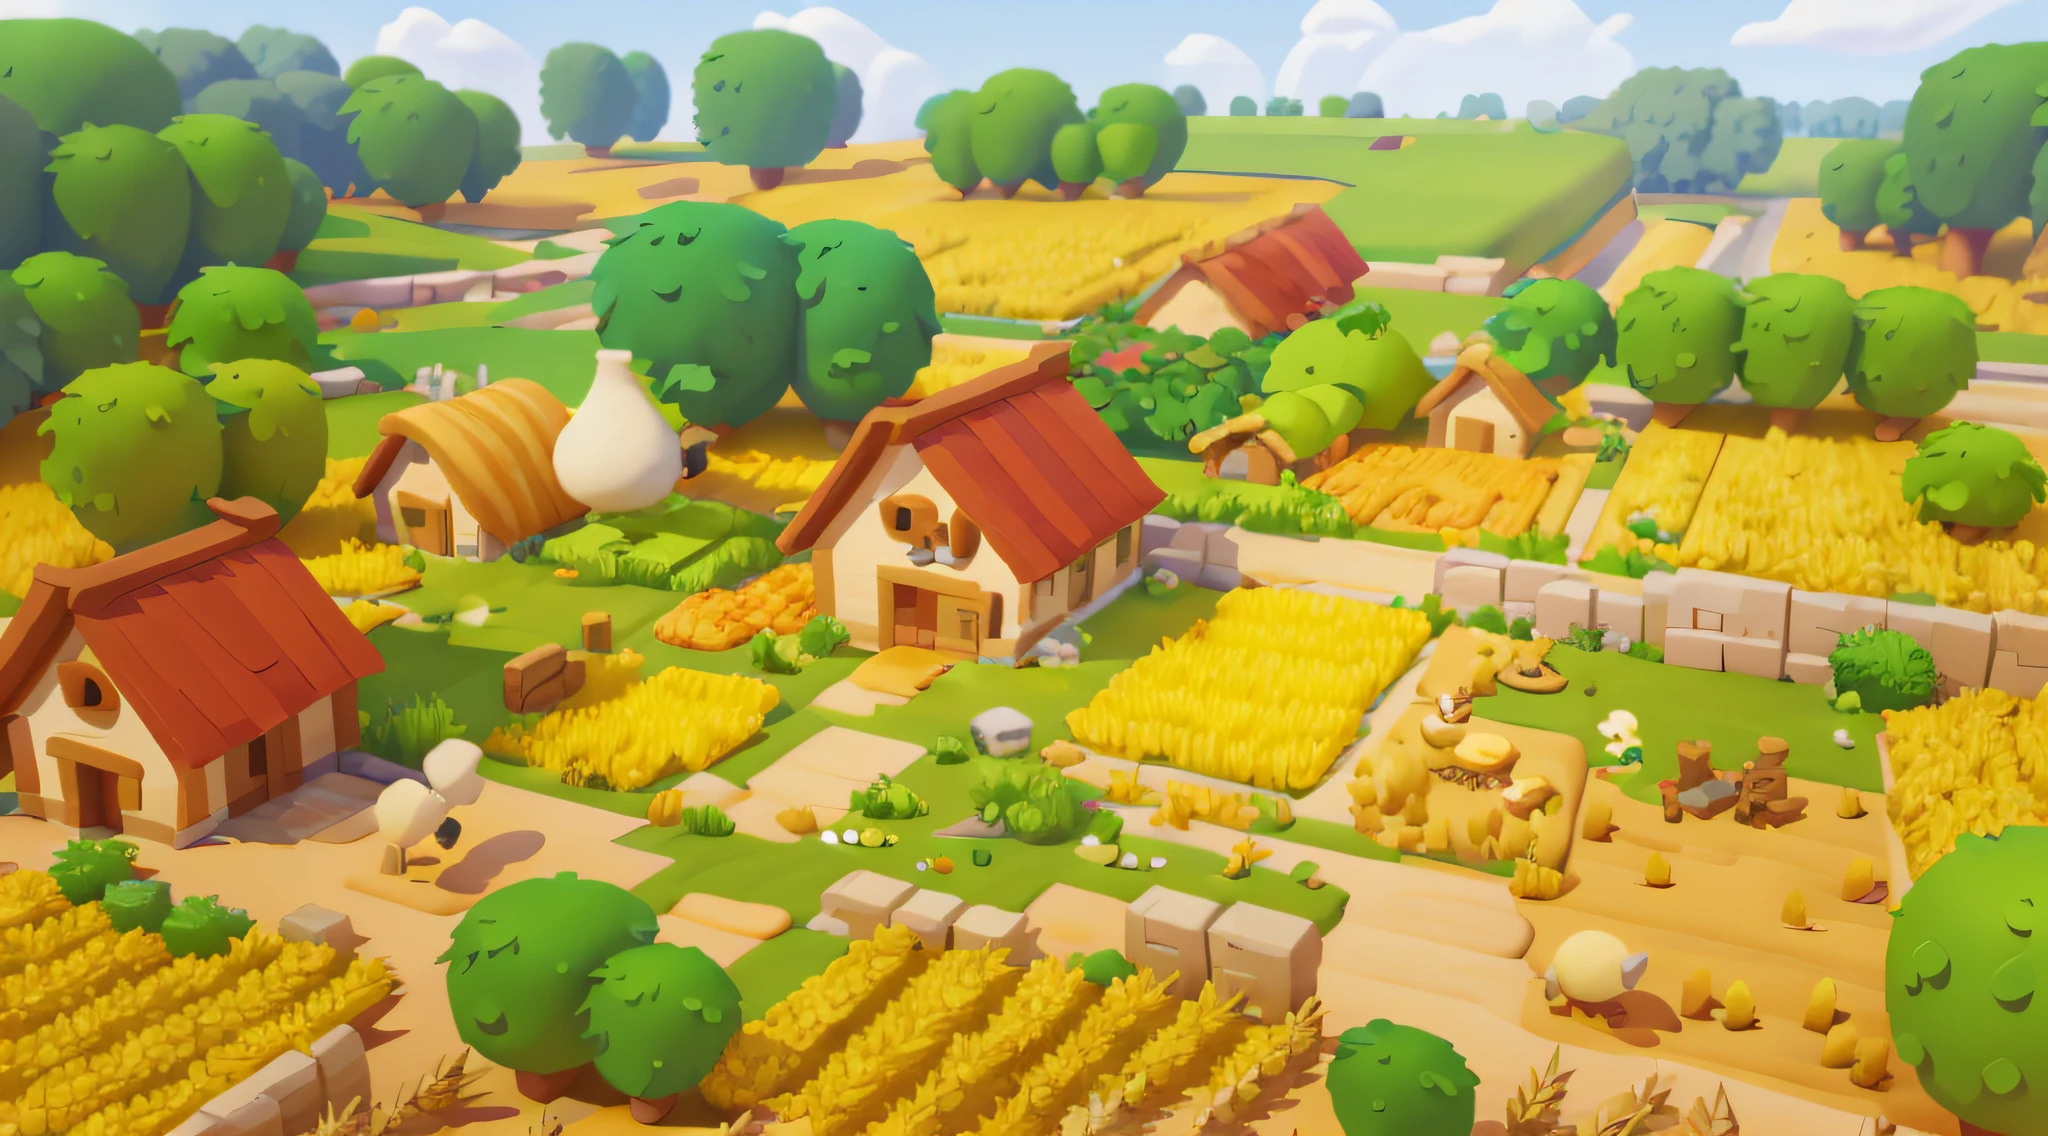 游戏架构设计, 农场, 卡通片, a large 小麦 field, 农场, 石头, 草, 蔬菜, 小麦, 树木, 动物, 休闲游戏风格, 3D, 杰作, 超级细节, 当地的, 最好的质量